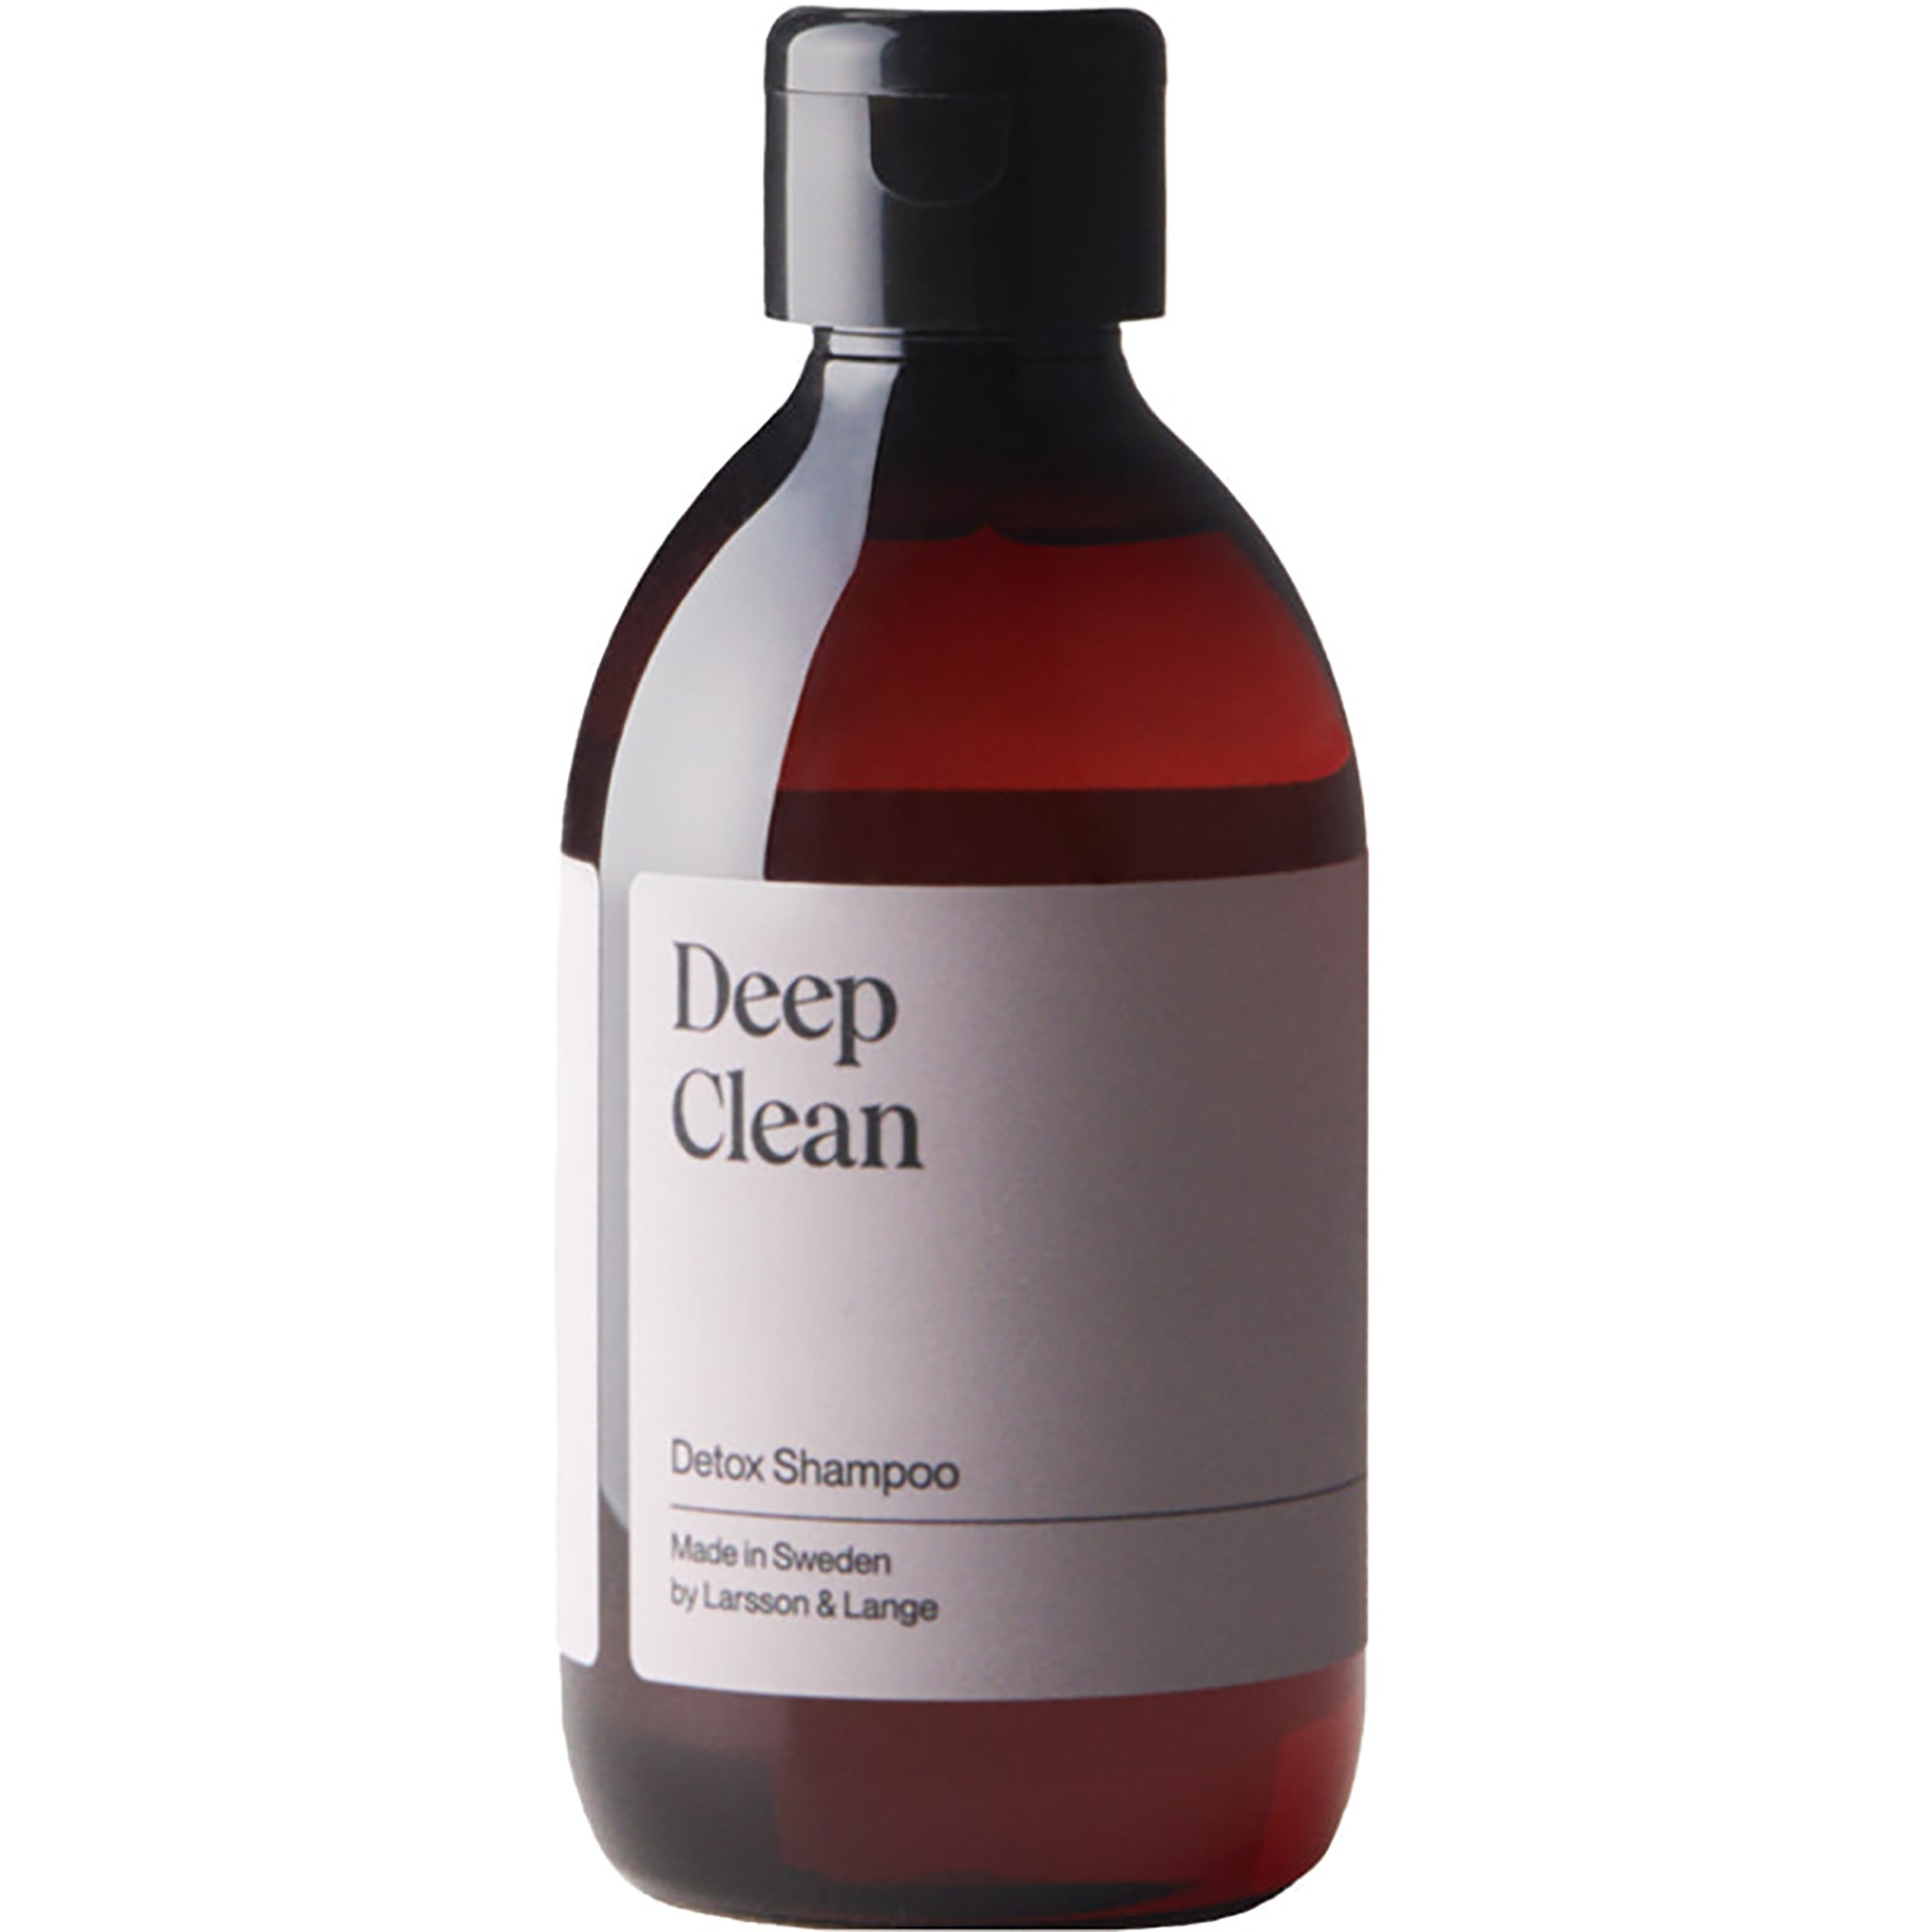 Zdjęcia - Szampon Larsson & Lange Deep Clean Detox Shampoo 300 ml